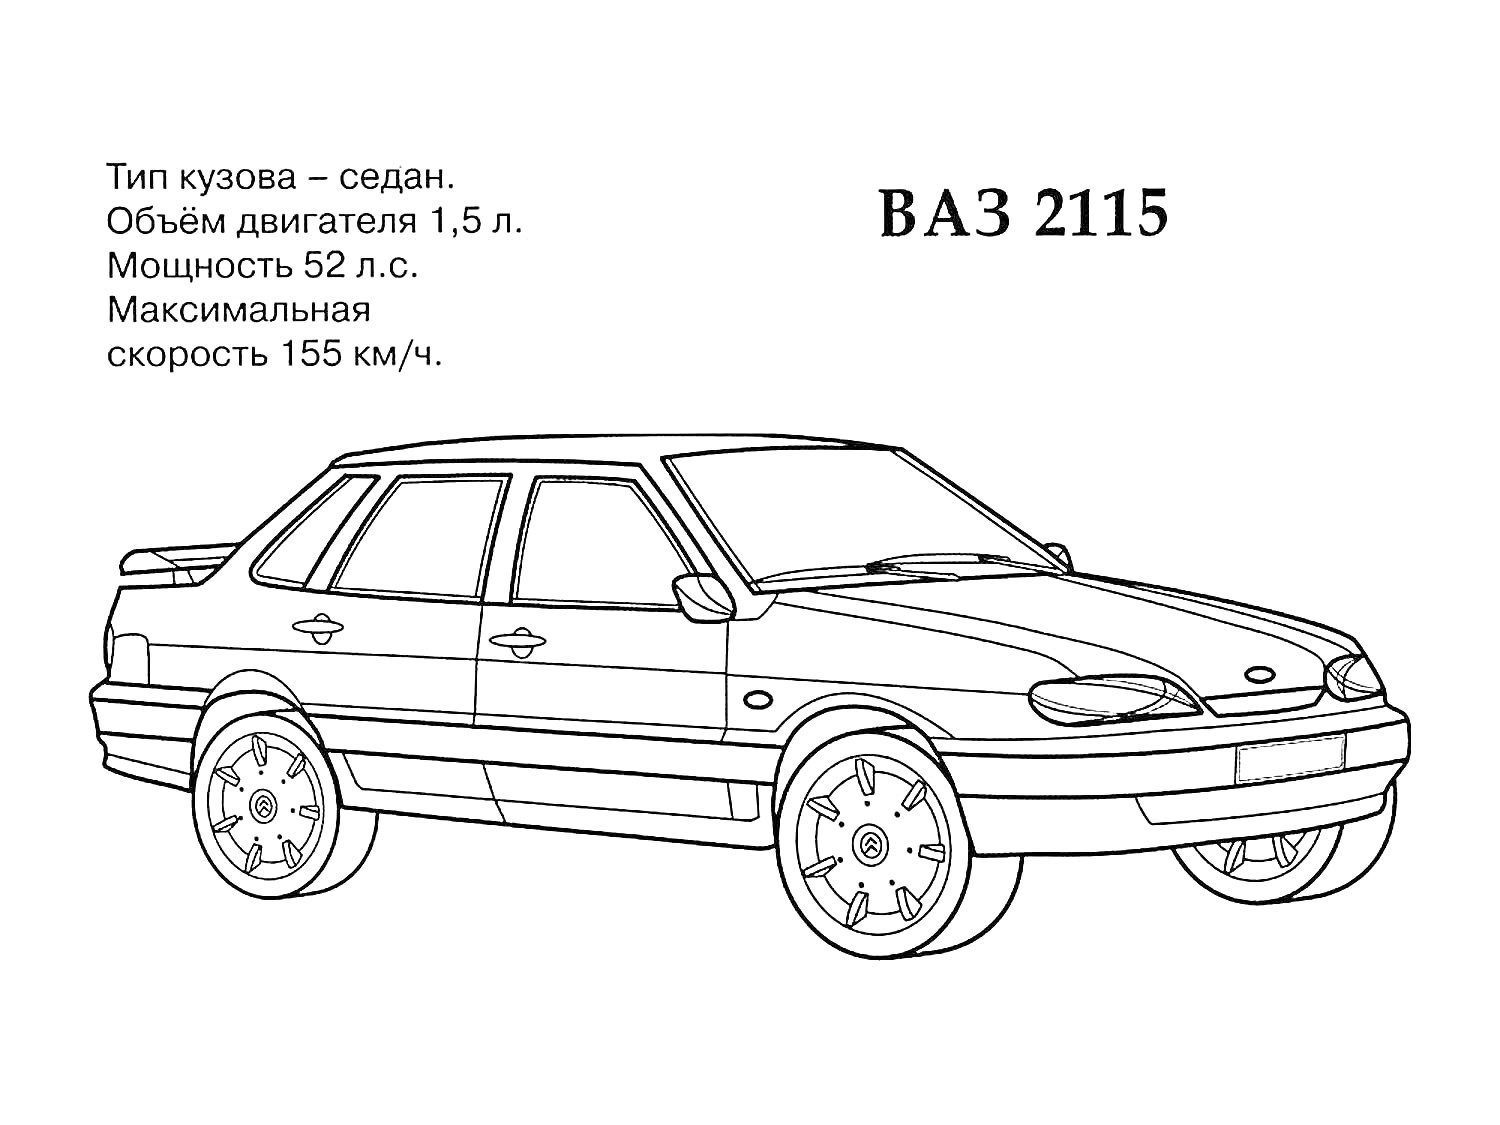 Раскраска ВАЗ 2115 седан. Объем двигателя 1.5 л, мощность 52 л.с., максимальная скорость 155 км/ч.